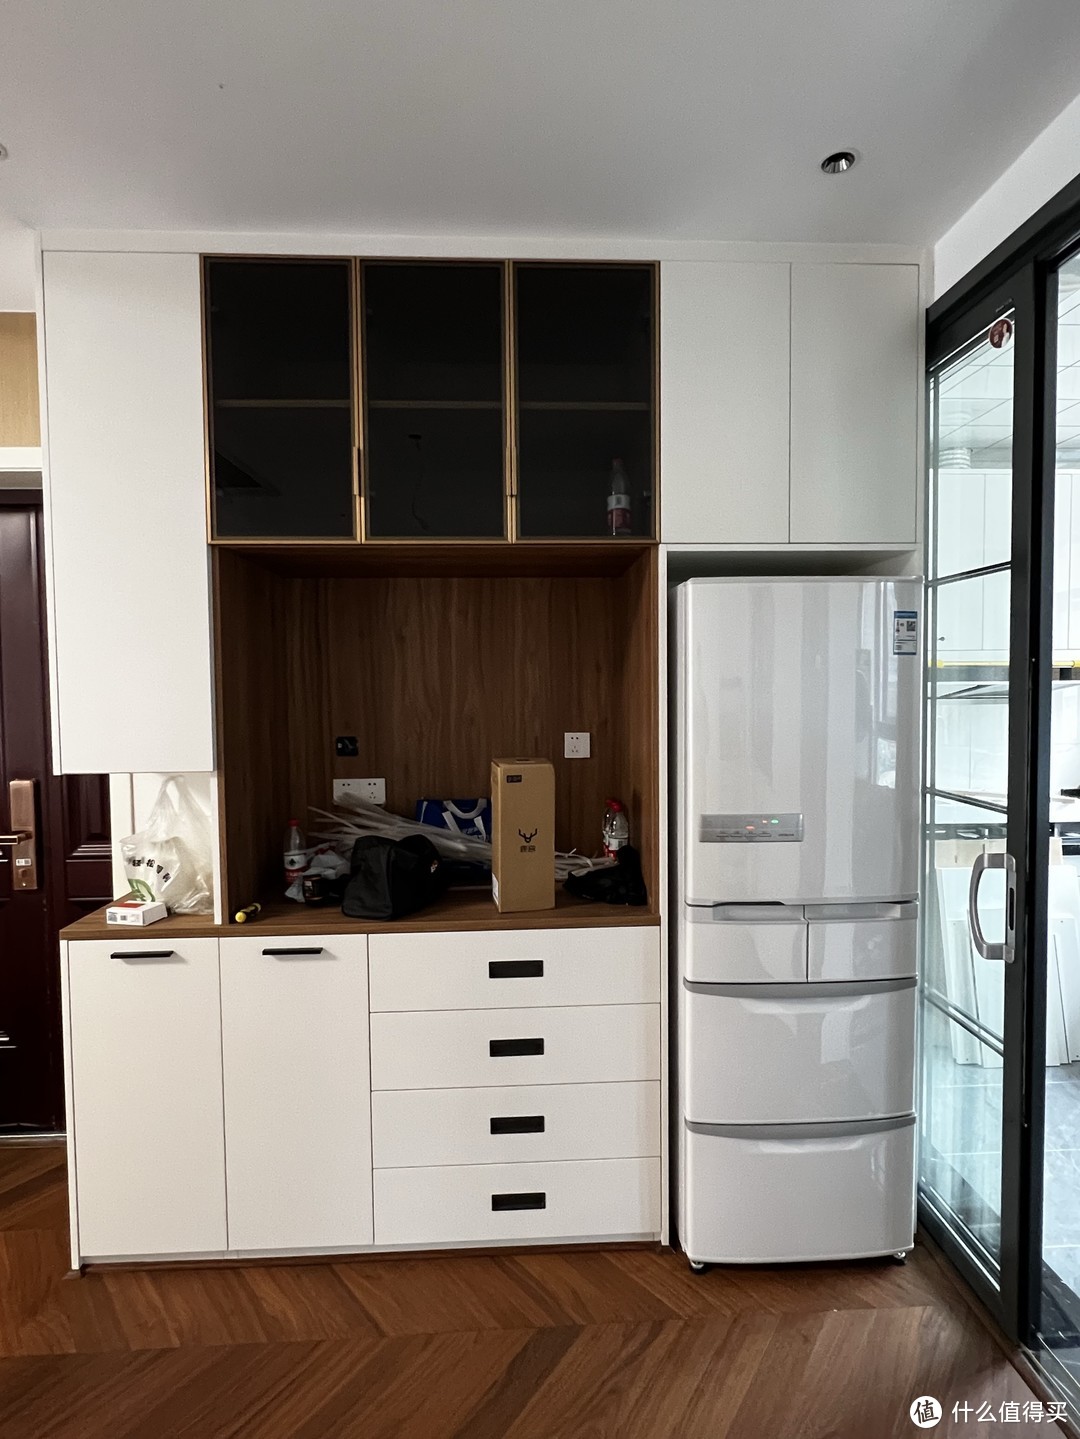 日立R-S42KC日系珍珠白多门冰箱——厨房中的颜值担当